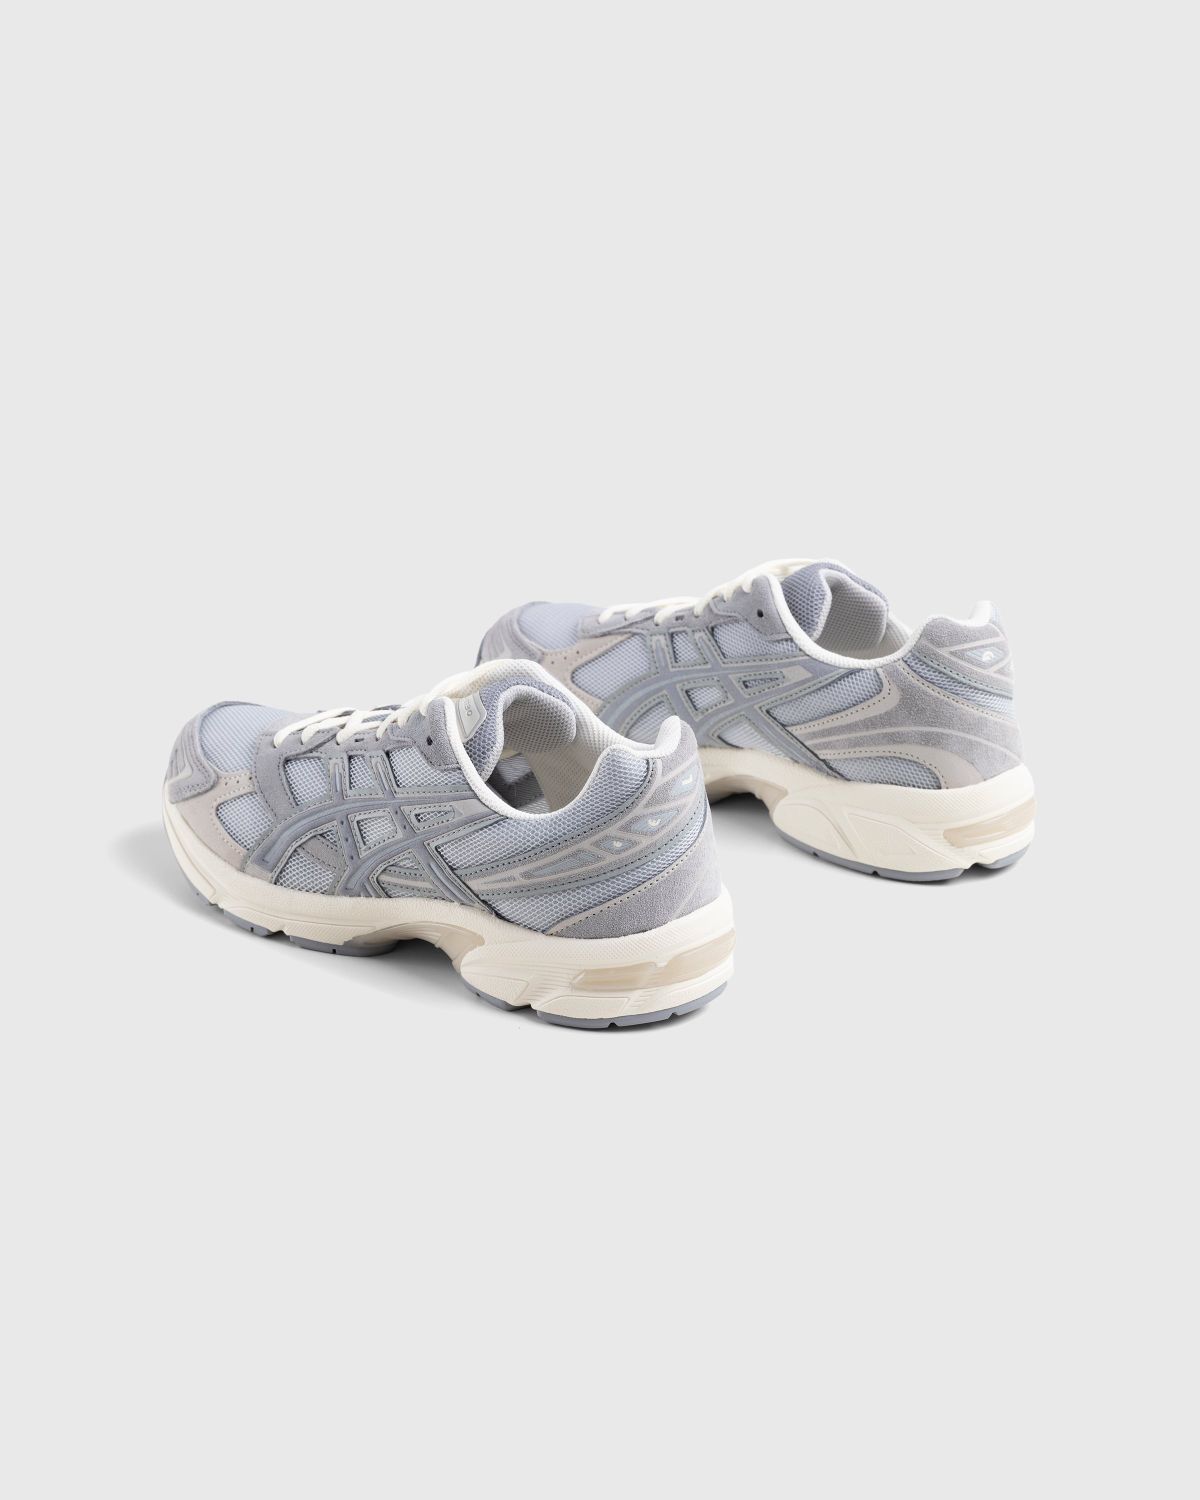 asics – Gel-1130 Piedmont Grey/Sheet Rock - Low Top Sneakers - Grey - Image 4